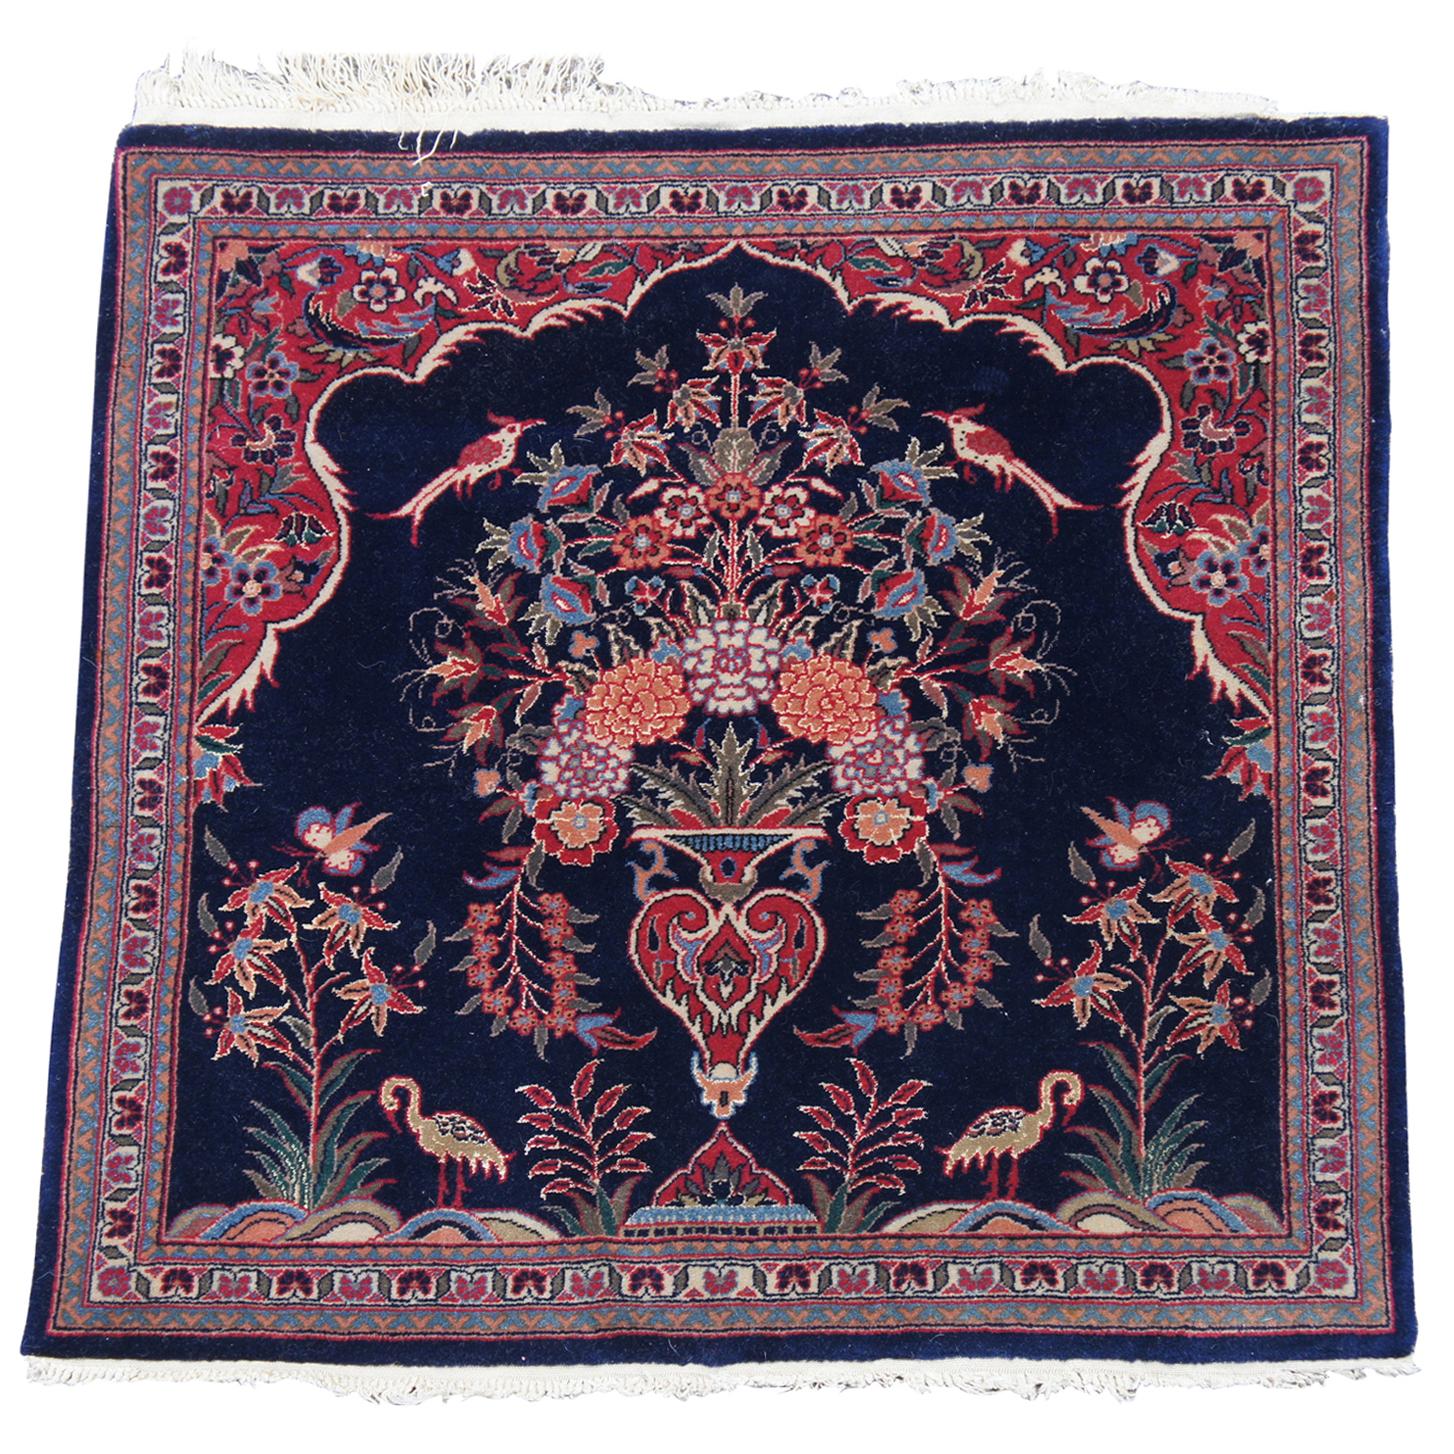 Vintage Square Persian Vase Floral Bird & Butterfly Area Rug Carpet Mat Urn